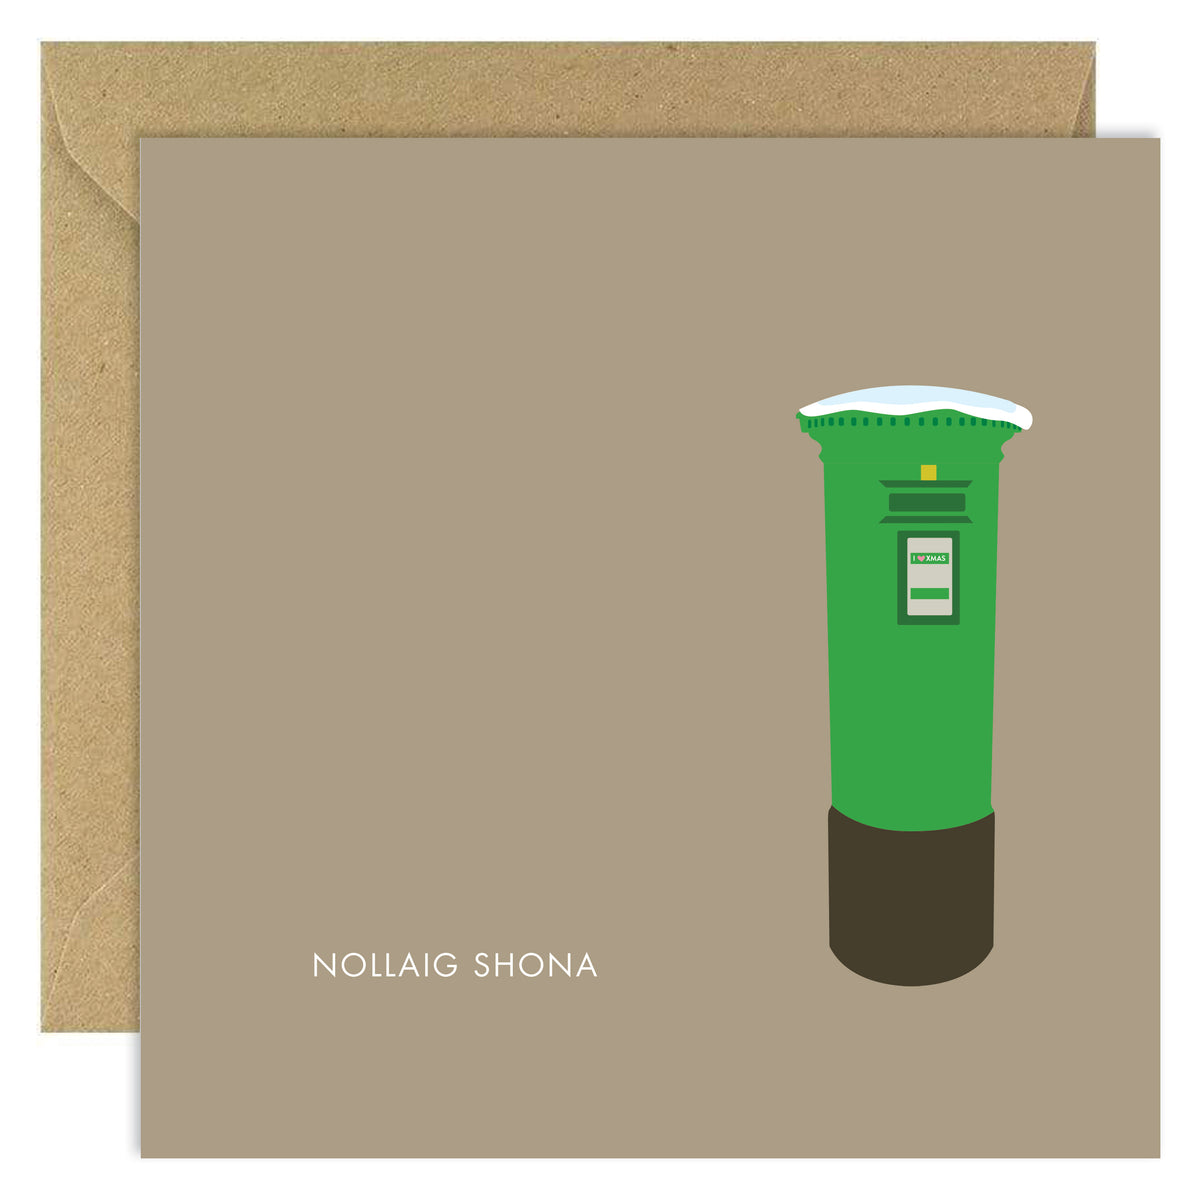 Nollaig Shona Postbox